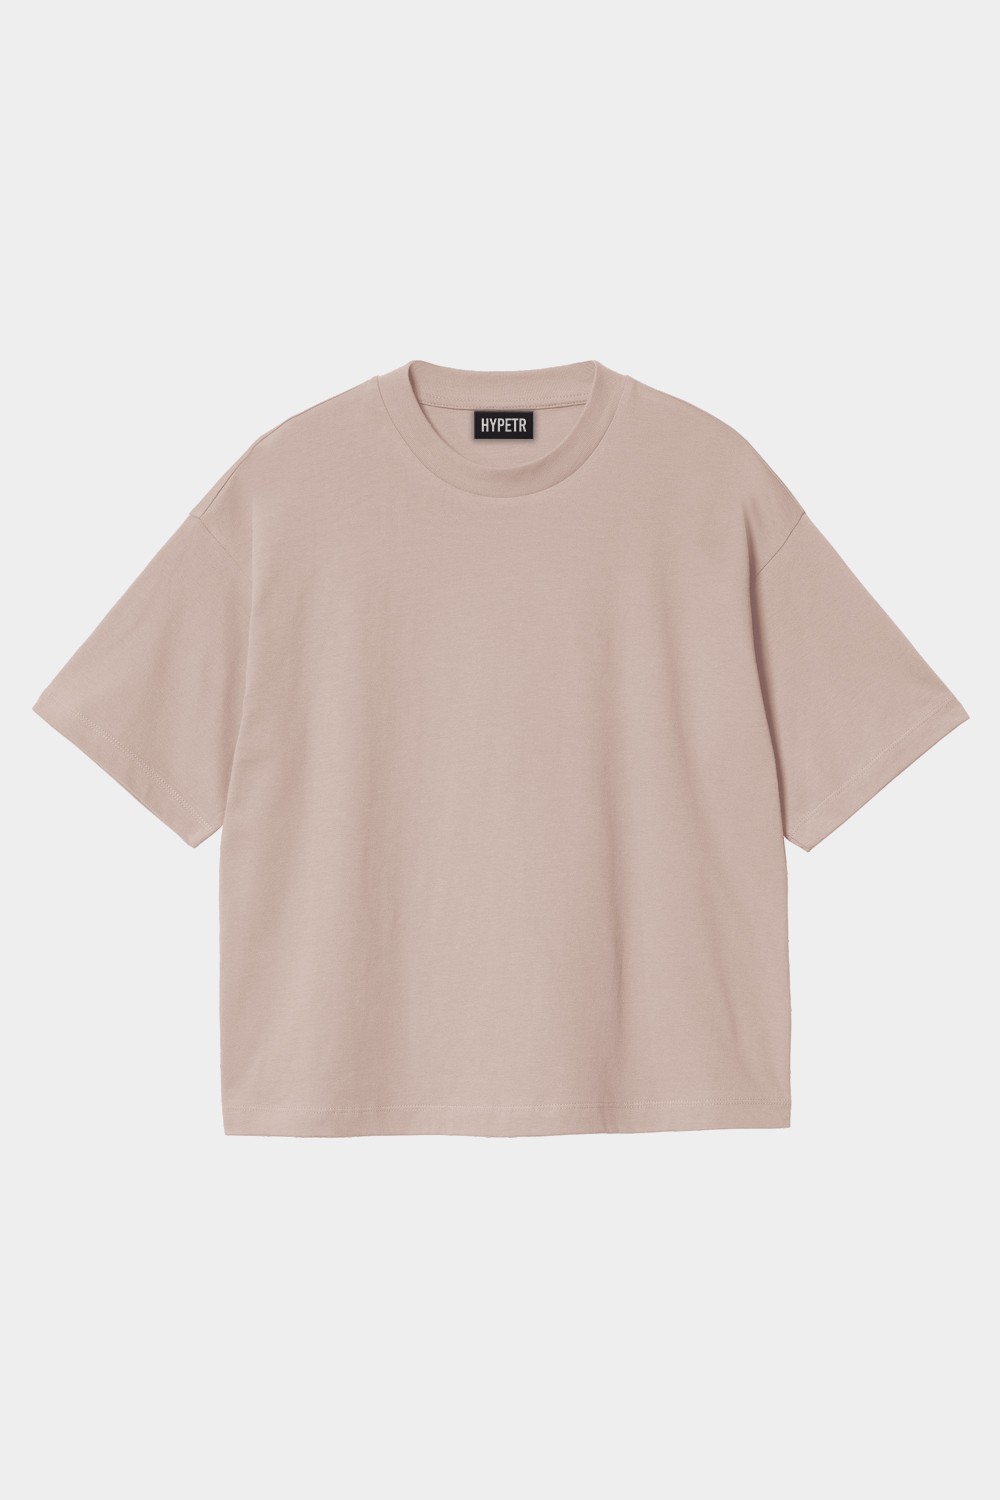 Oversized Basic T Shirt (HYPE-15)